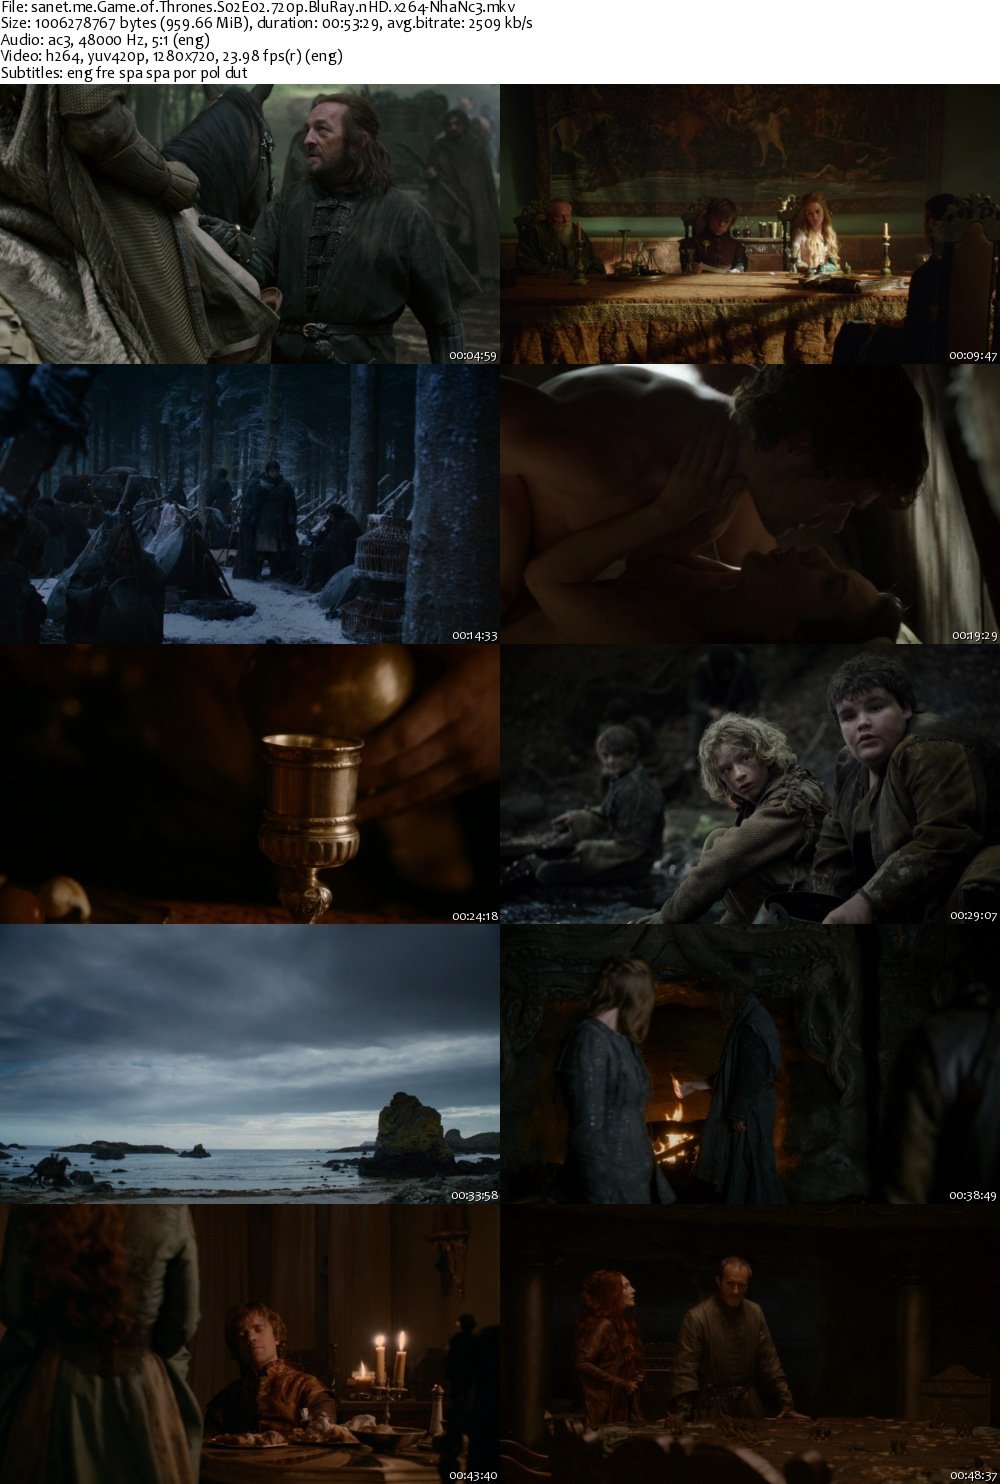 Download Game Of Thrones Season 2 2012 Torrent - OTorrents